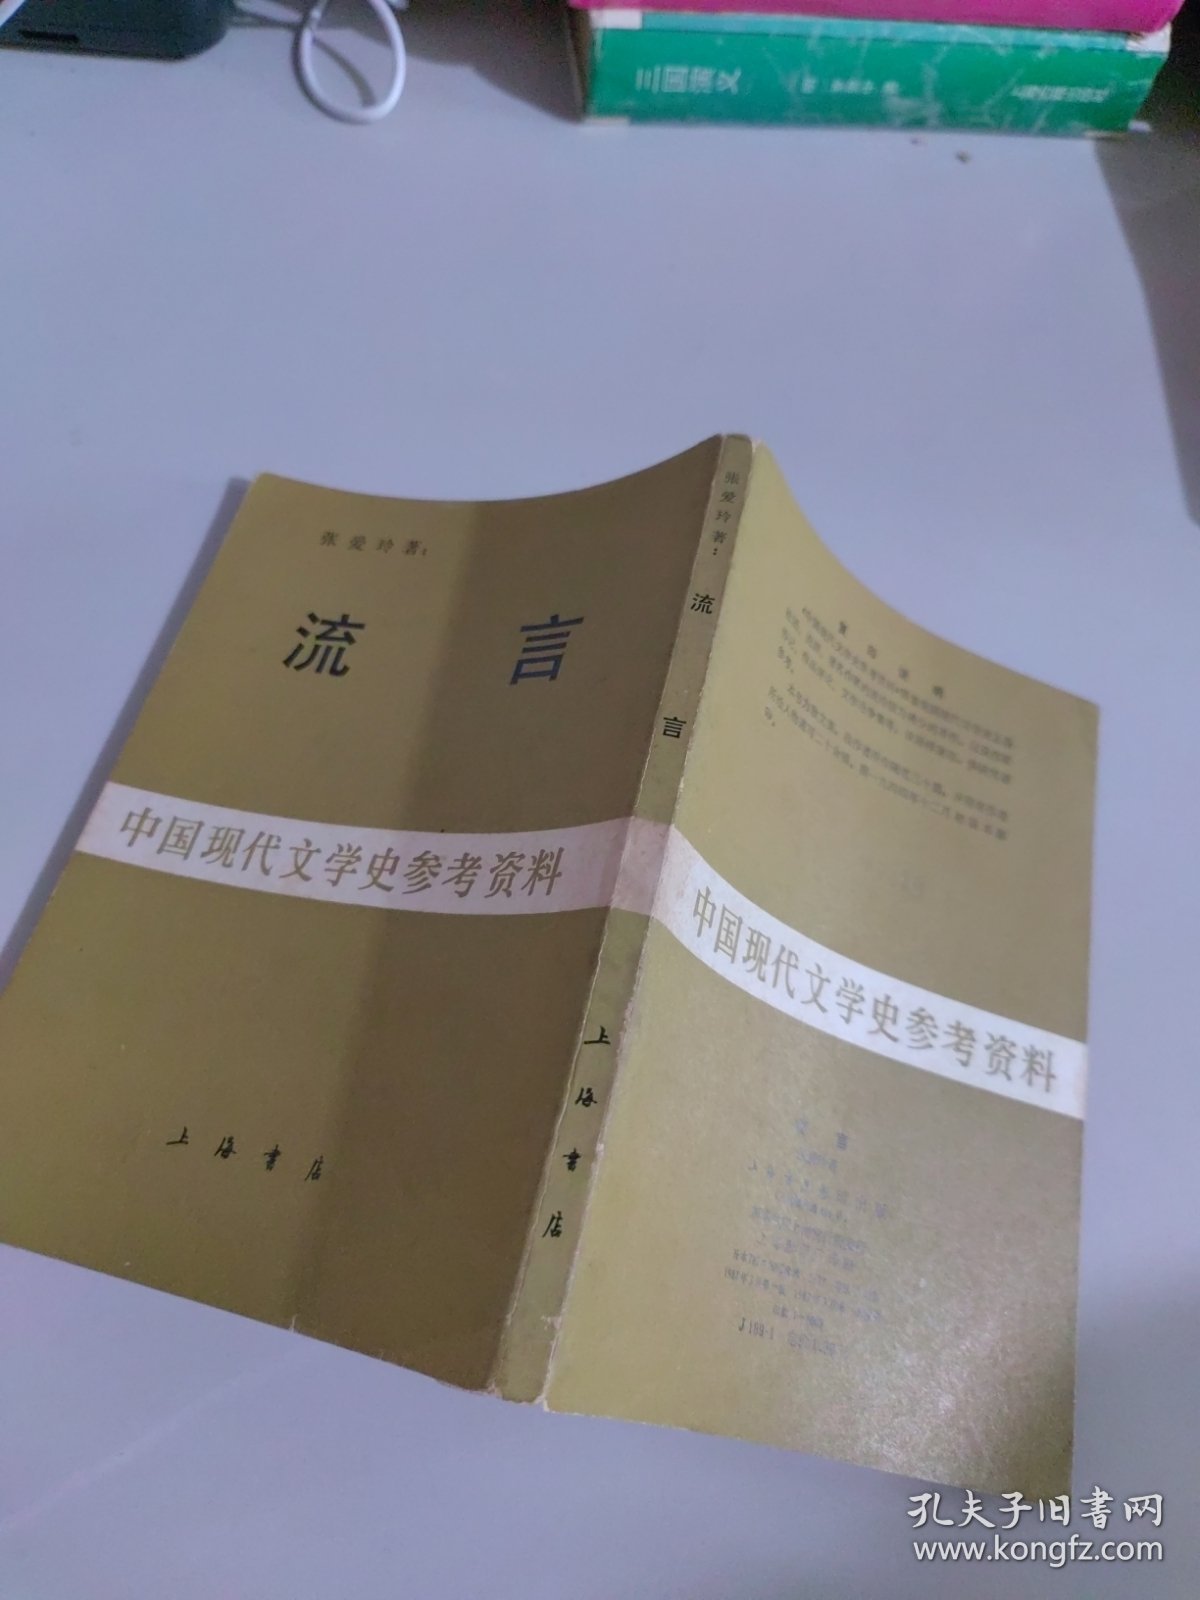 中国现代文学史参考资料：流言